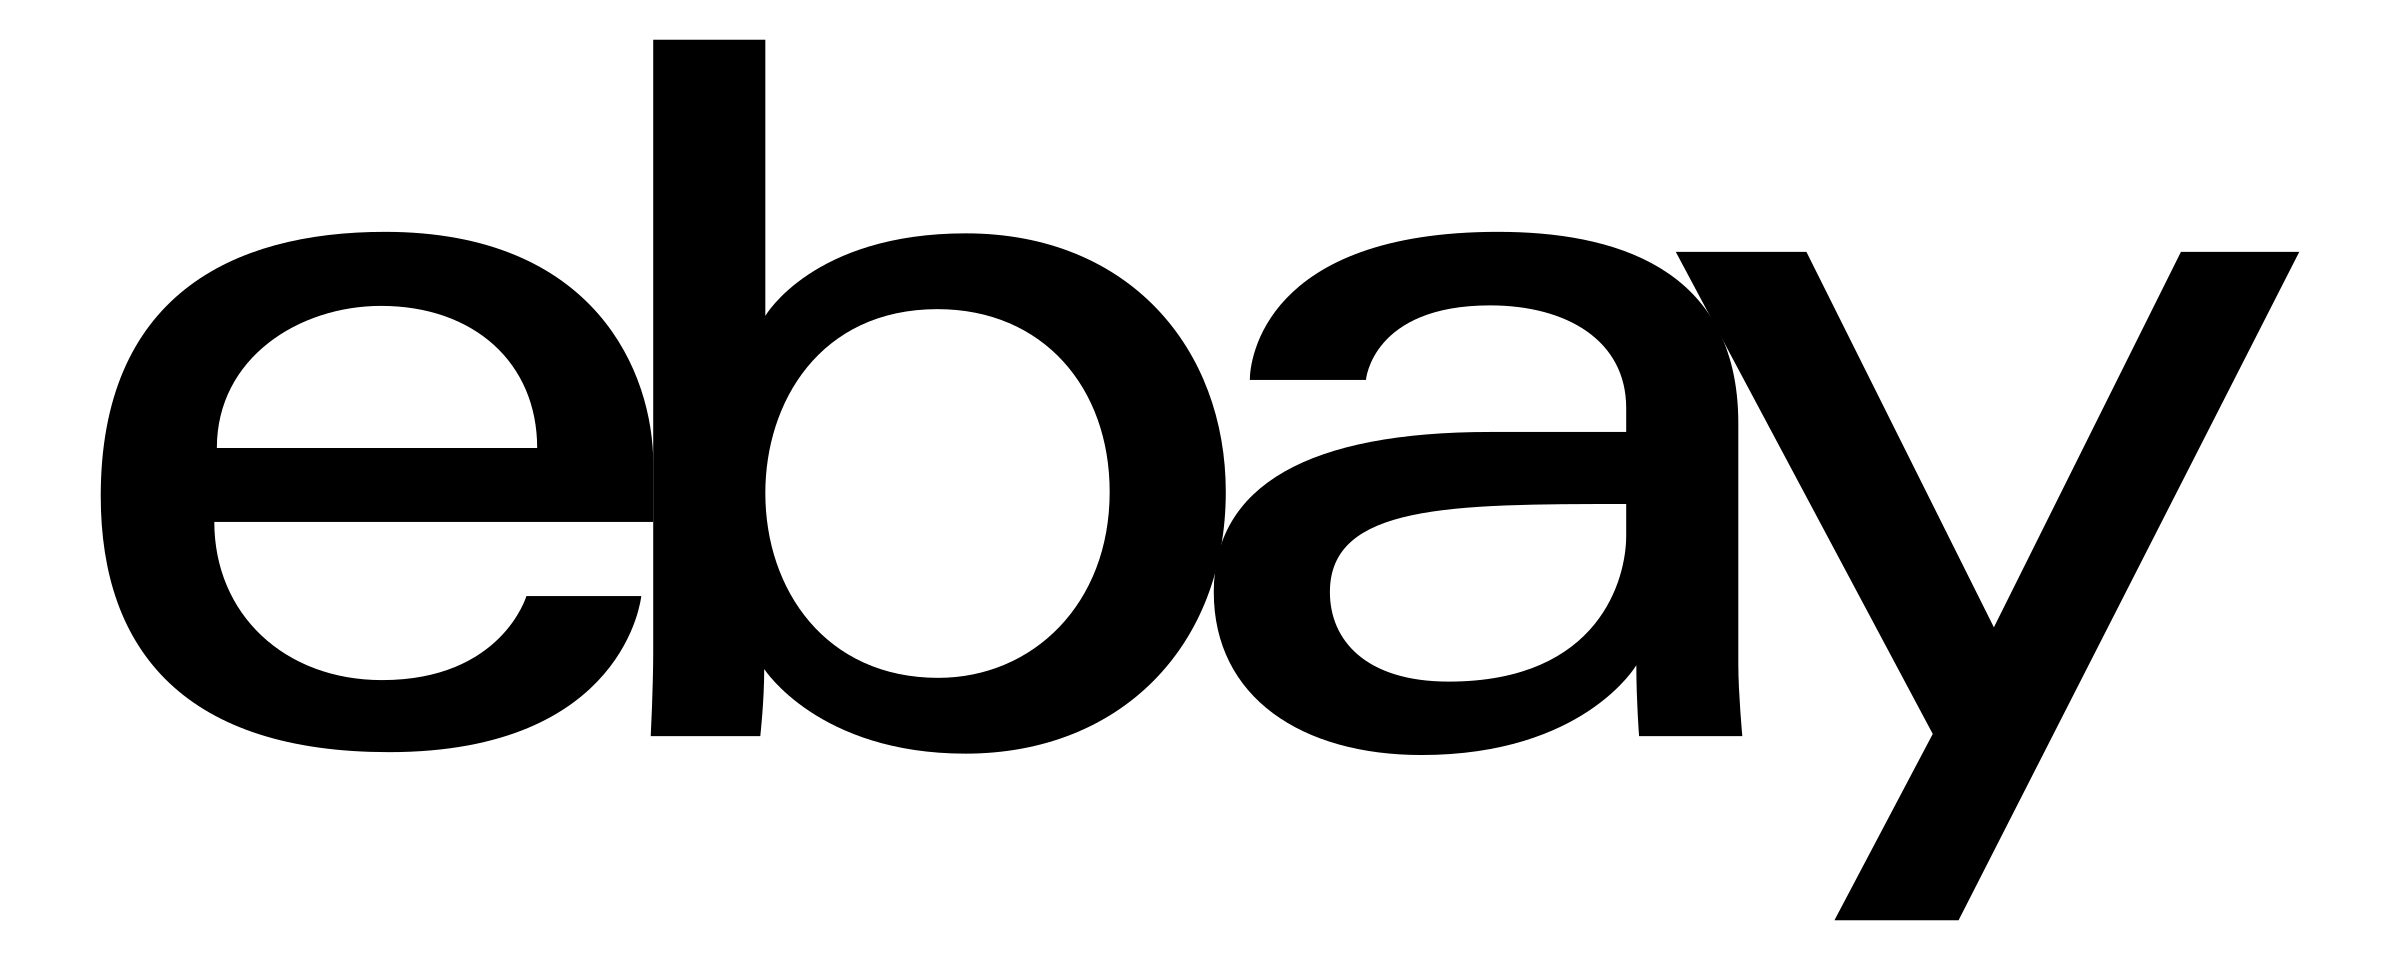 Ebay, Brand, Website, Logo, O